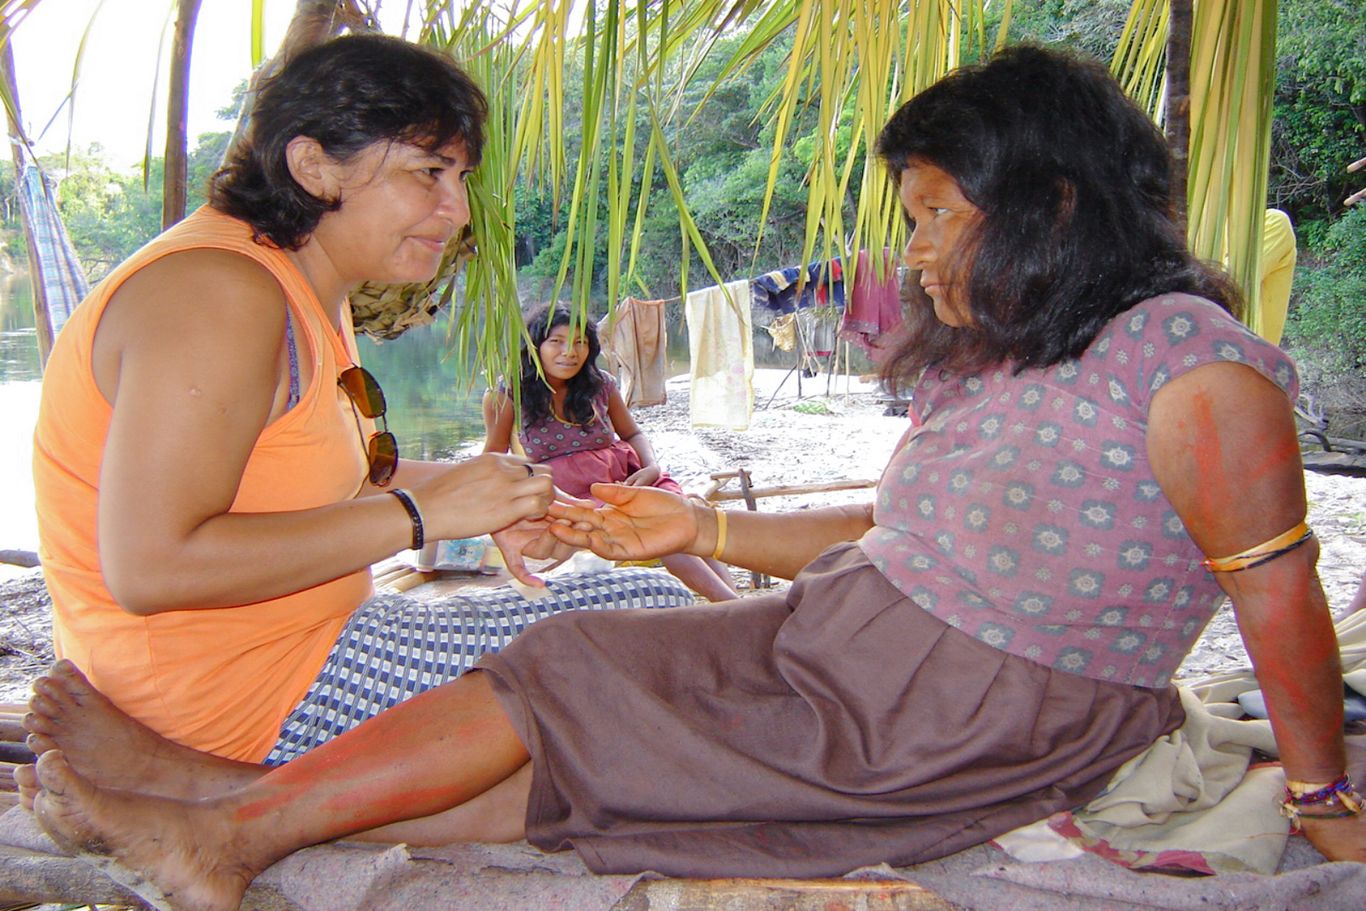 Eine CIMI Mitarbeiterin sitzt neben einer anderen Frau und betreut sie medizinisch. Eine weitere Frau sitzt im Hintergrund.